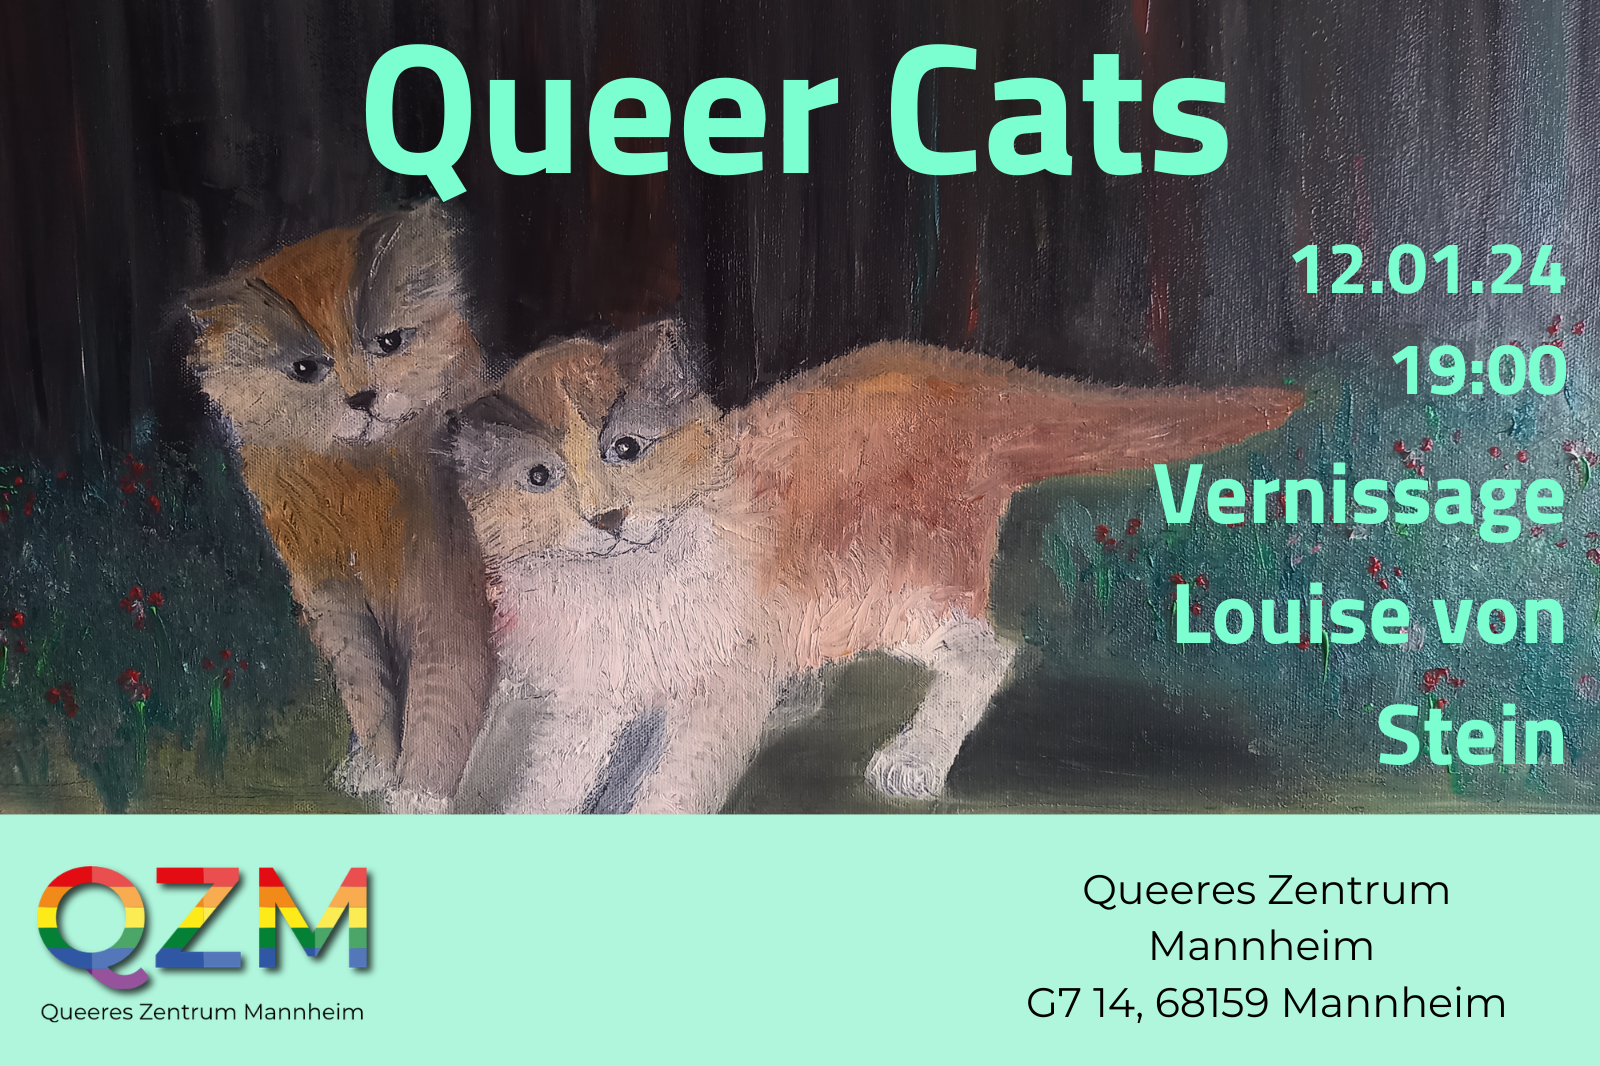 Im Hintergrund des Bildes ist ein Gemälde von Louise von Stein abgebildet, in dem zwei beige-braune Katzen spielerisch den*die Betrachter*in beobachten. Im Titel steht in zartgrüner Schrift "Queer Cats". Darunter steht, in der gleichen grünen Farbe "12.01.24, Vernissage Louise von Stein". Im zartgrünen Banner ist das Logo des QZM zu sehen und die Adresse: G7 14 68159 Mannheim.